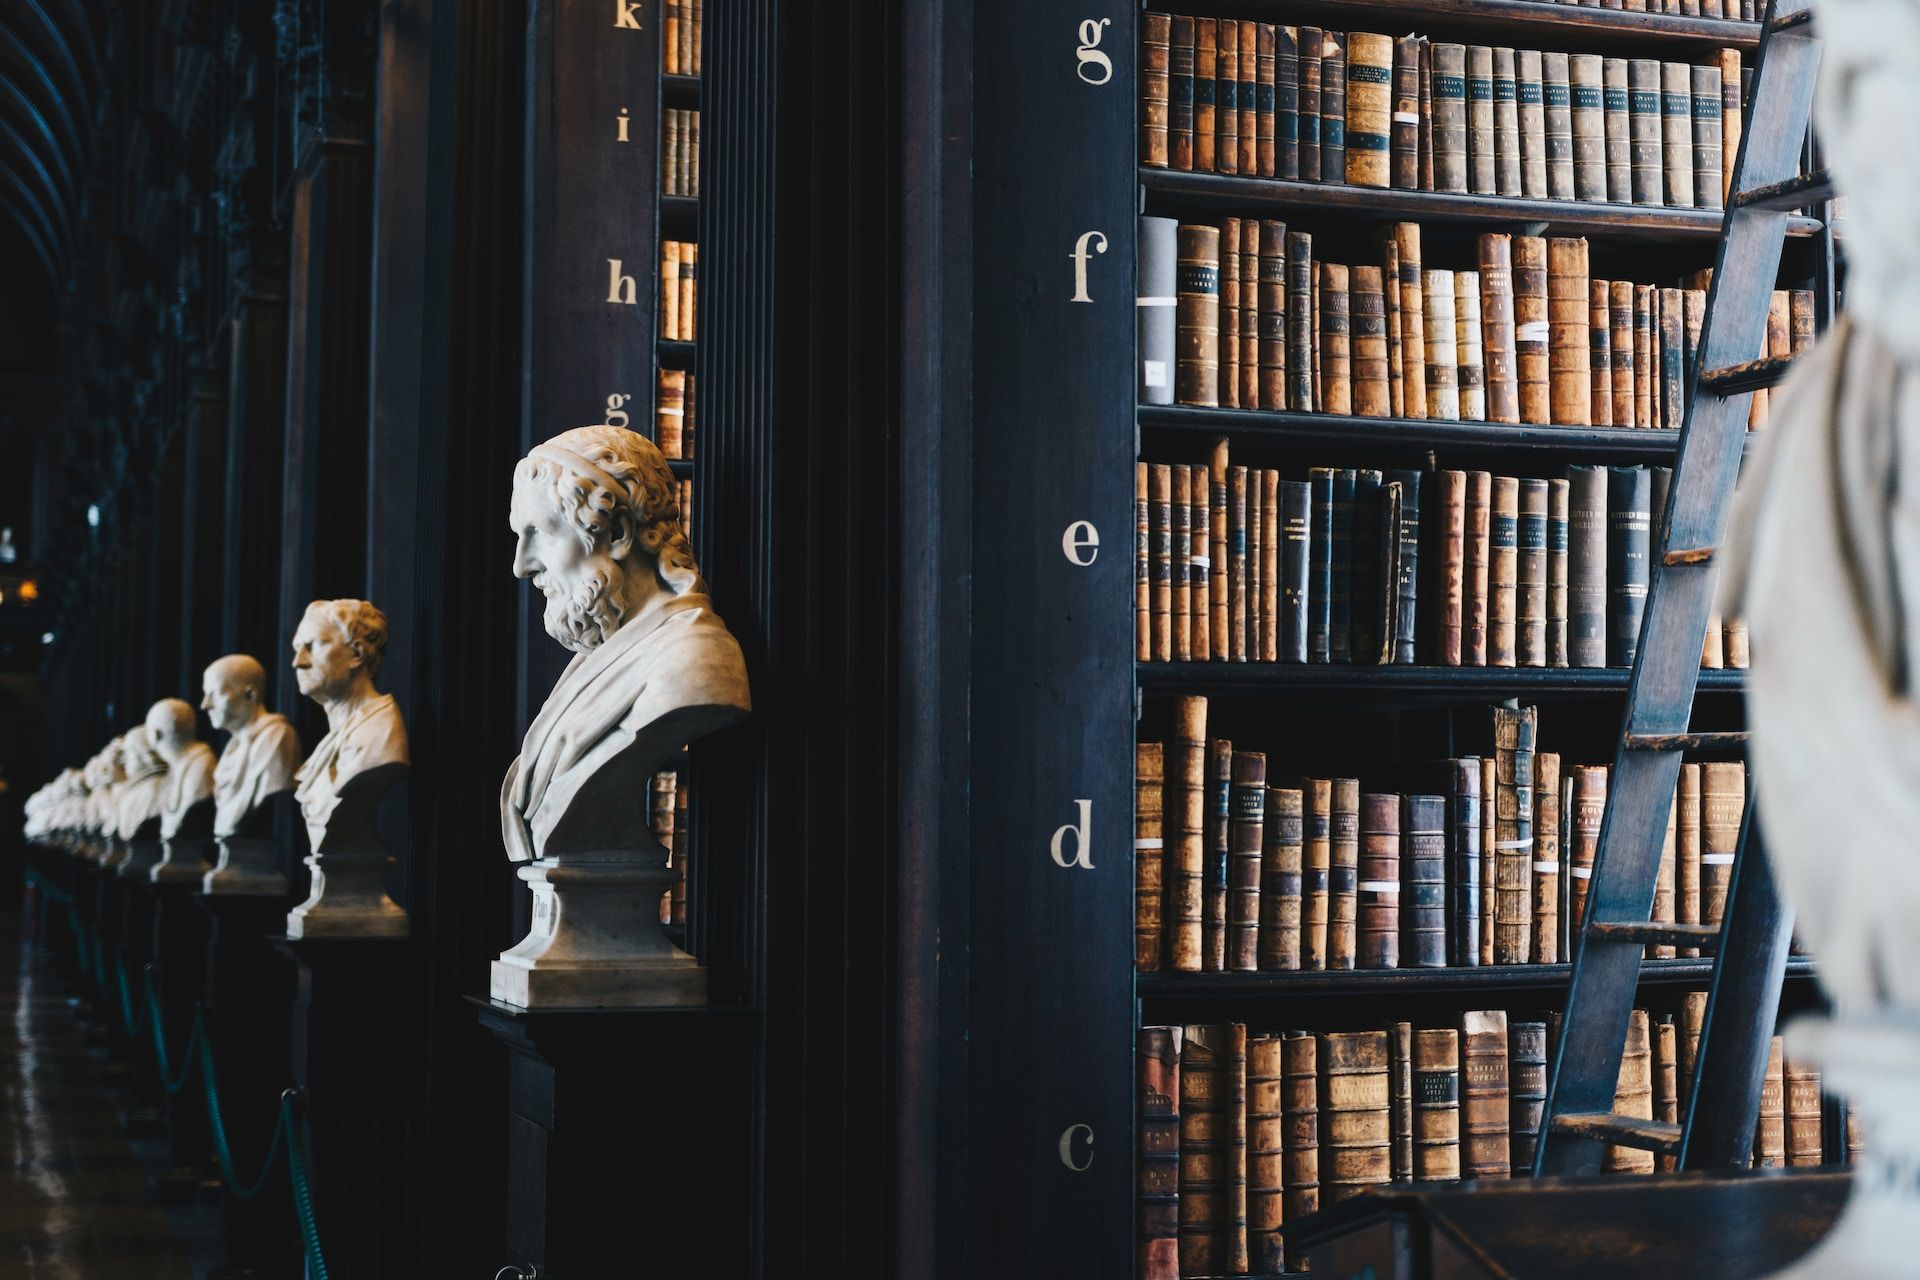 Une bibliothèque ancienne (à Dublin) avec des bustes de philosophes - Photo de Giammarco Boscaro sur https://unsplash.com/fr/photos/lot-de-livres-sur-etagere-en-bois-noir-zeH-ljawHtg